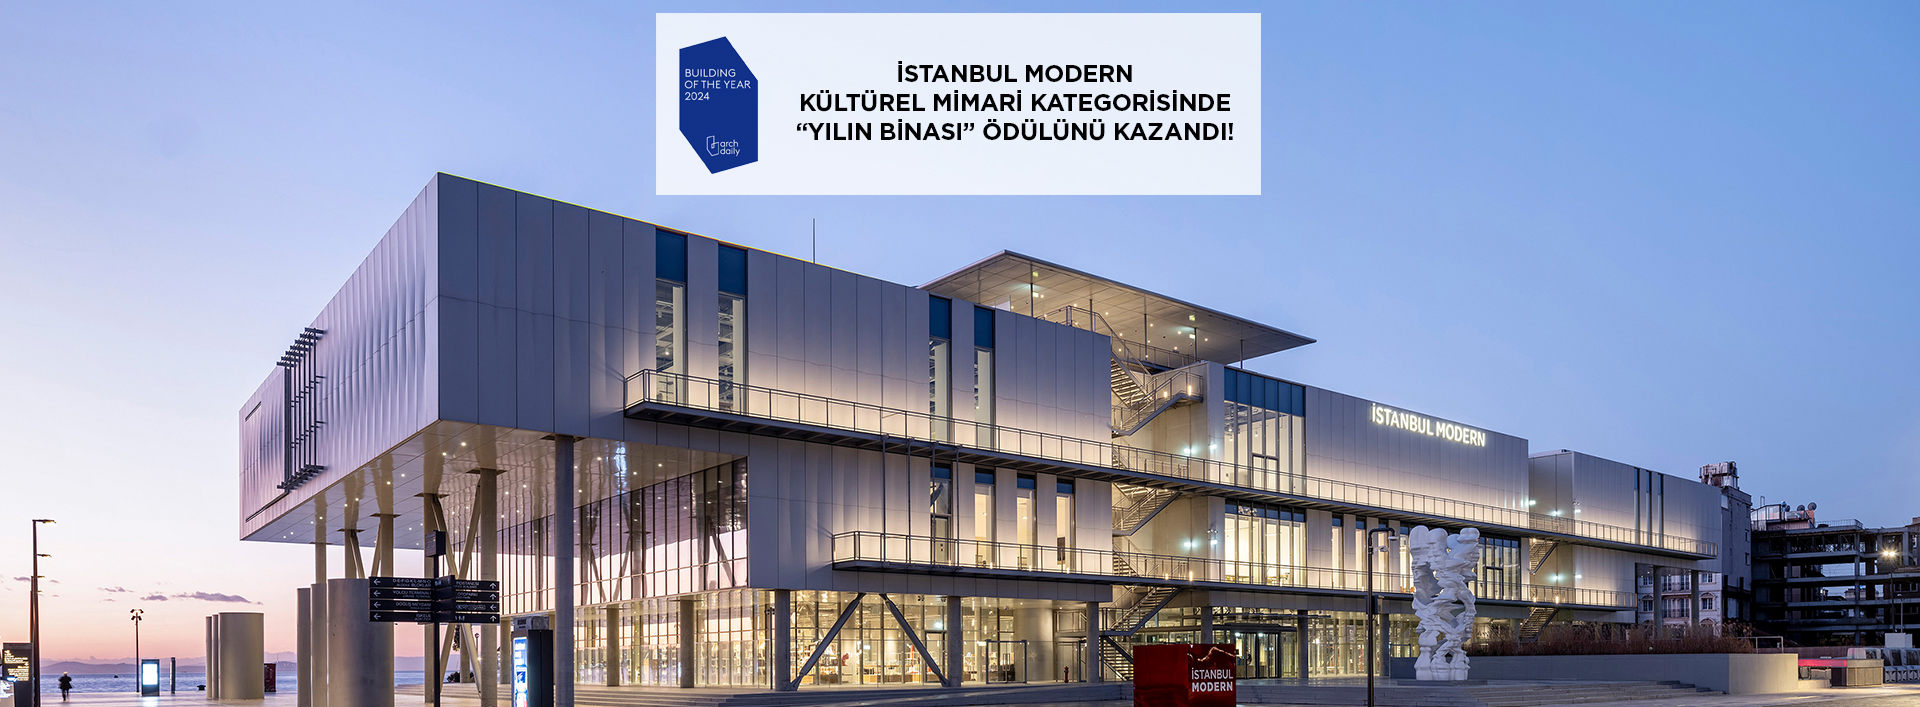 İstanbul Modern’in yeni müze binasına bir ödül daha…